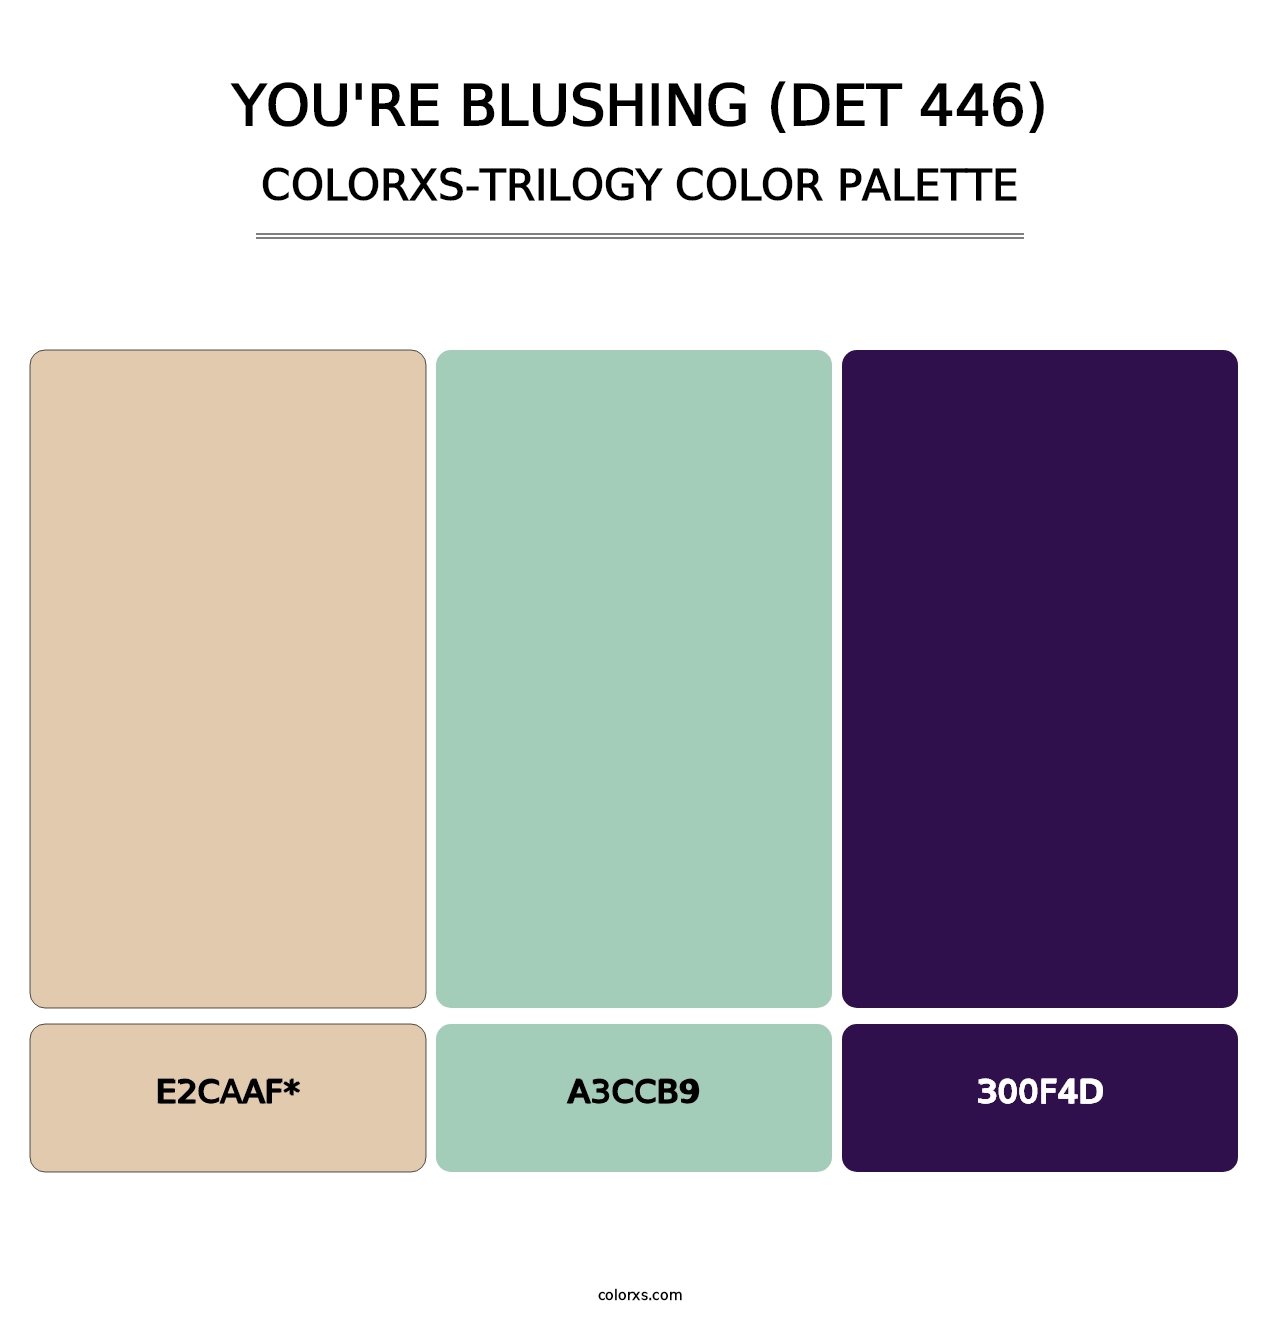 You're Blushing (DET 446) - Colorxs Trilogy Palette